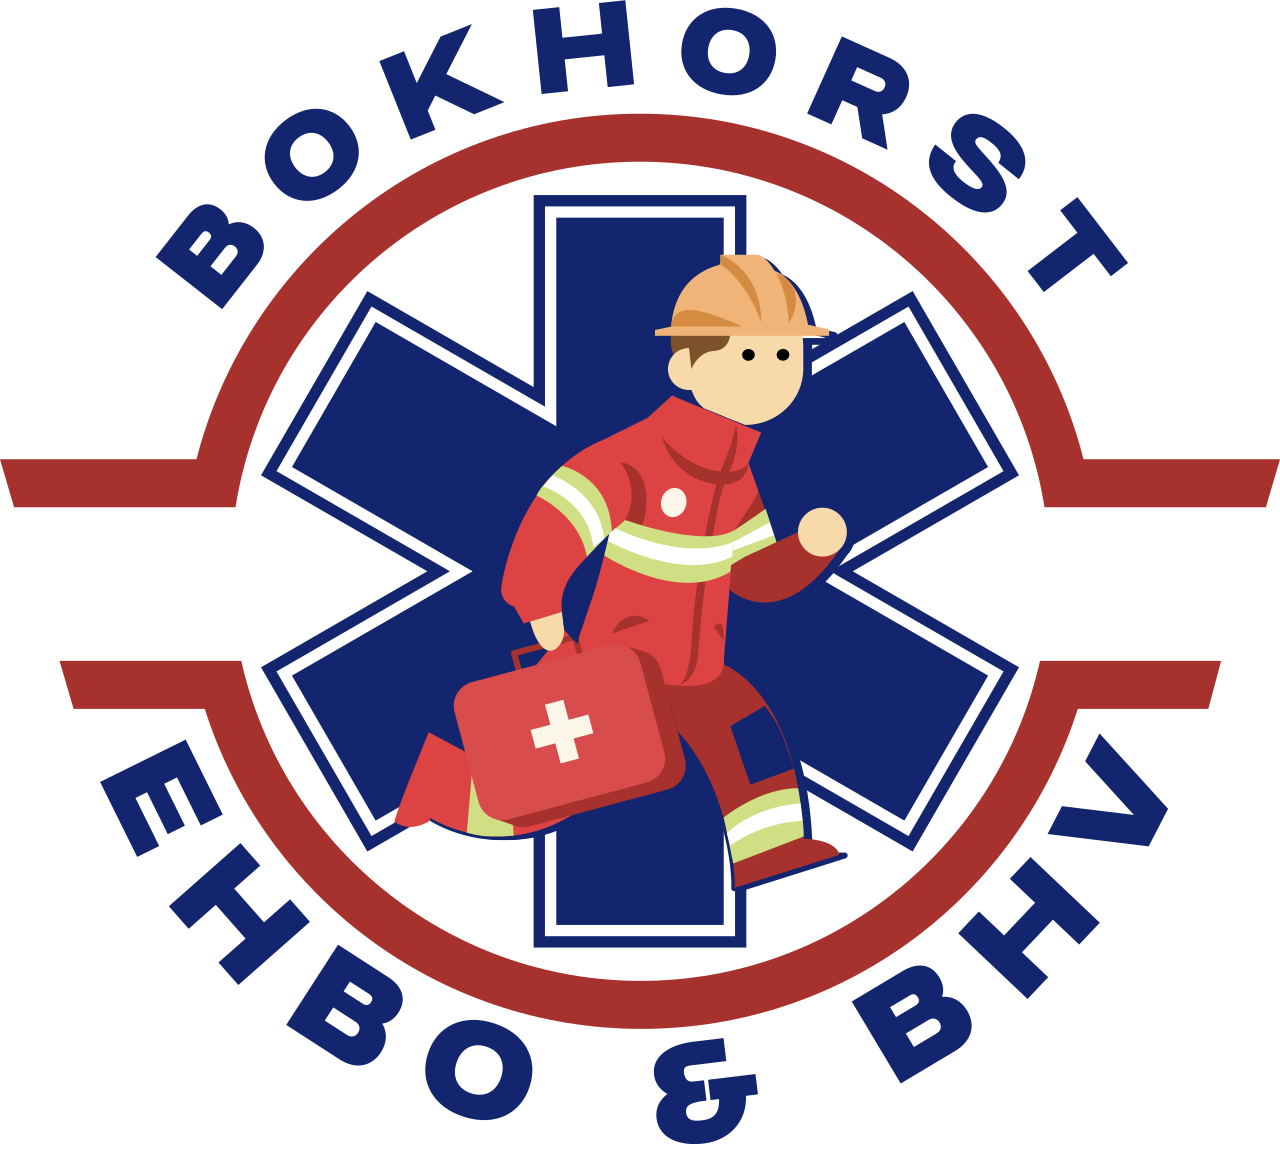 BOKHORST's logo